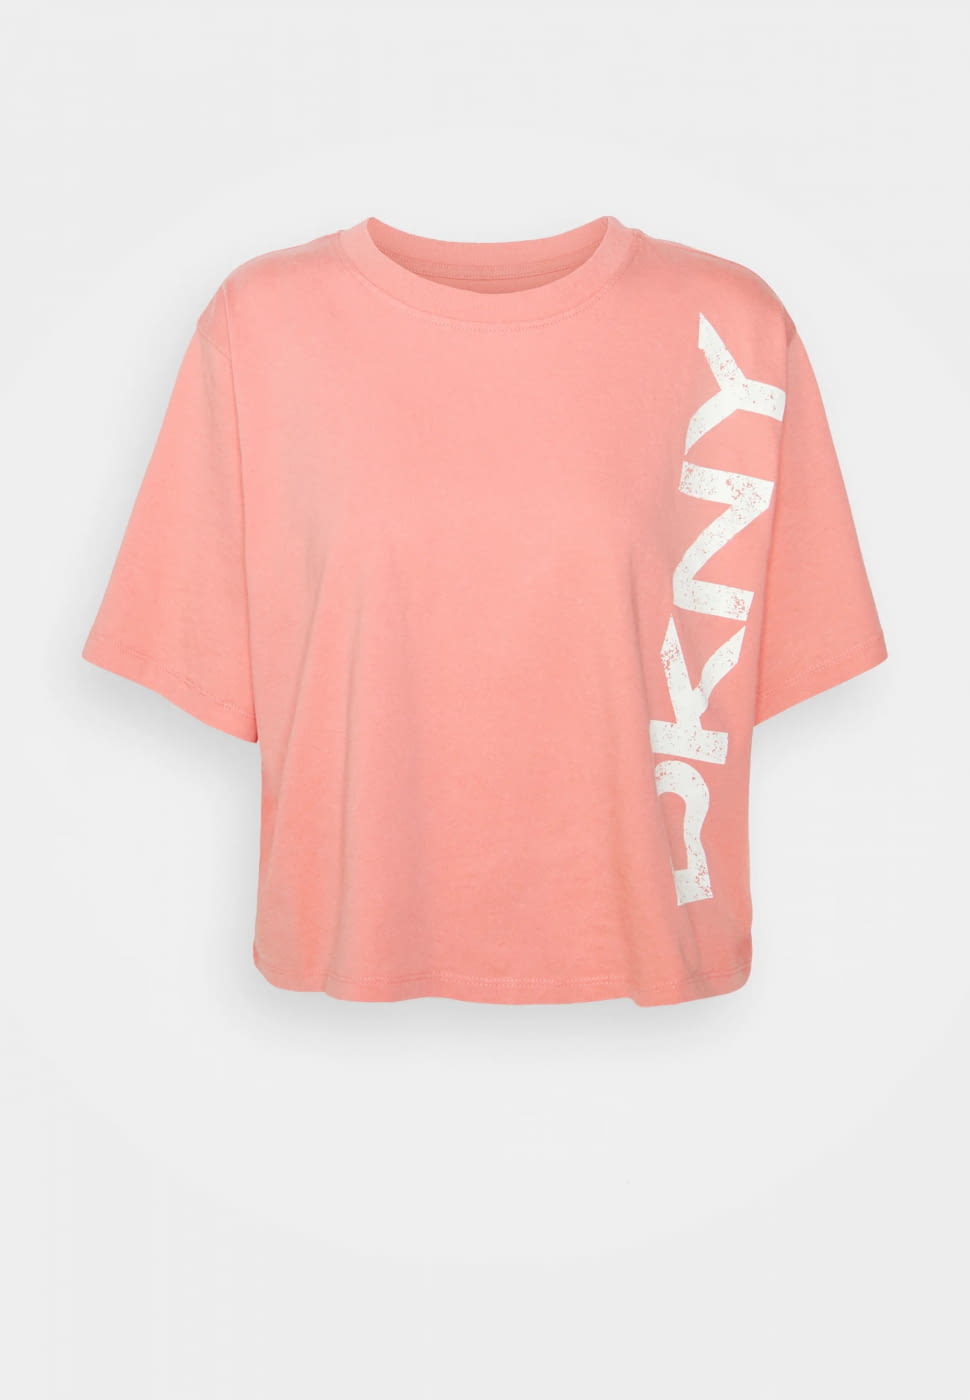 DKNY camiseta amplia coral con logo lateral